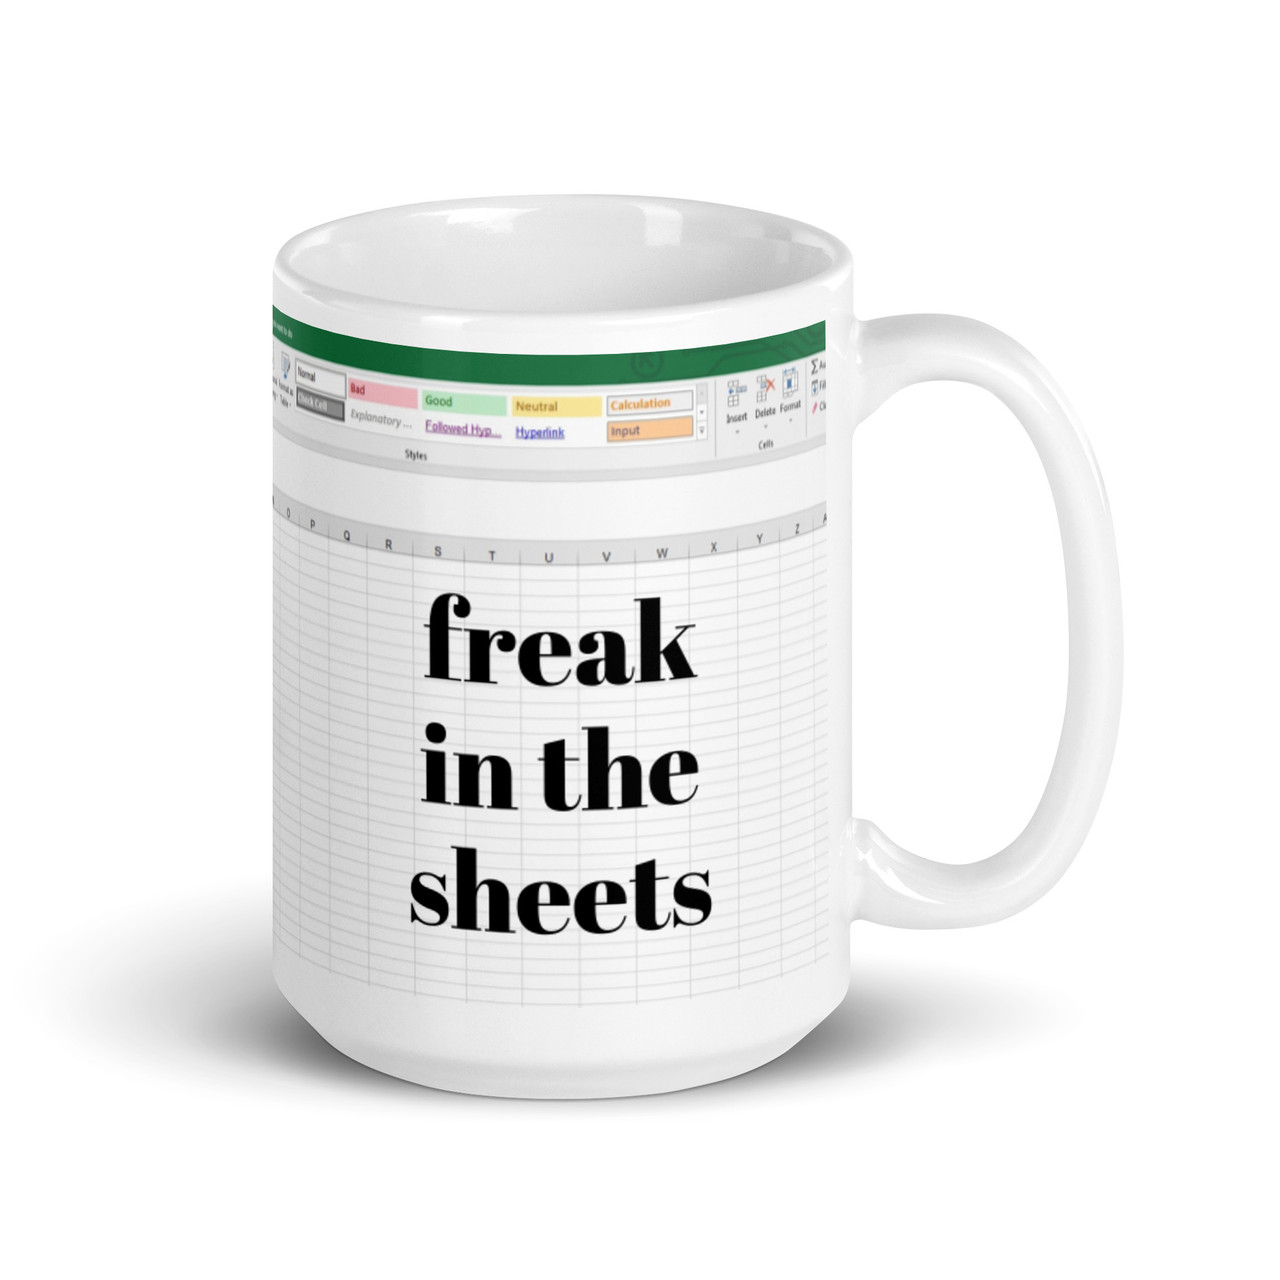 Freak in the Sheets Excel Mug 11oz